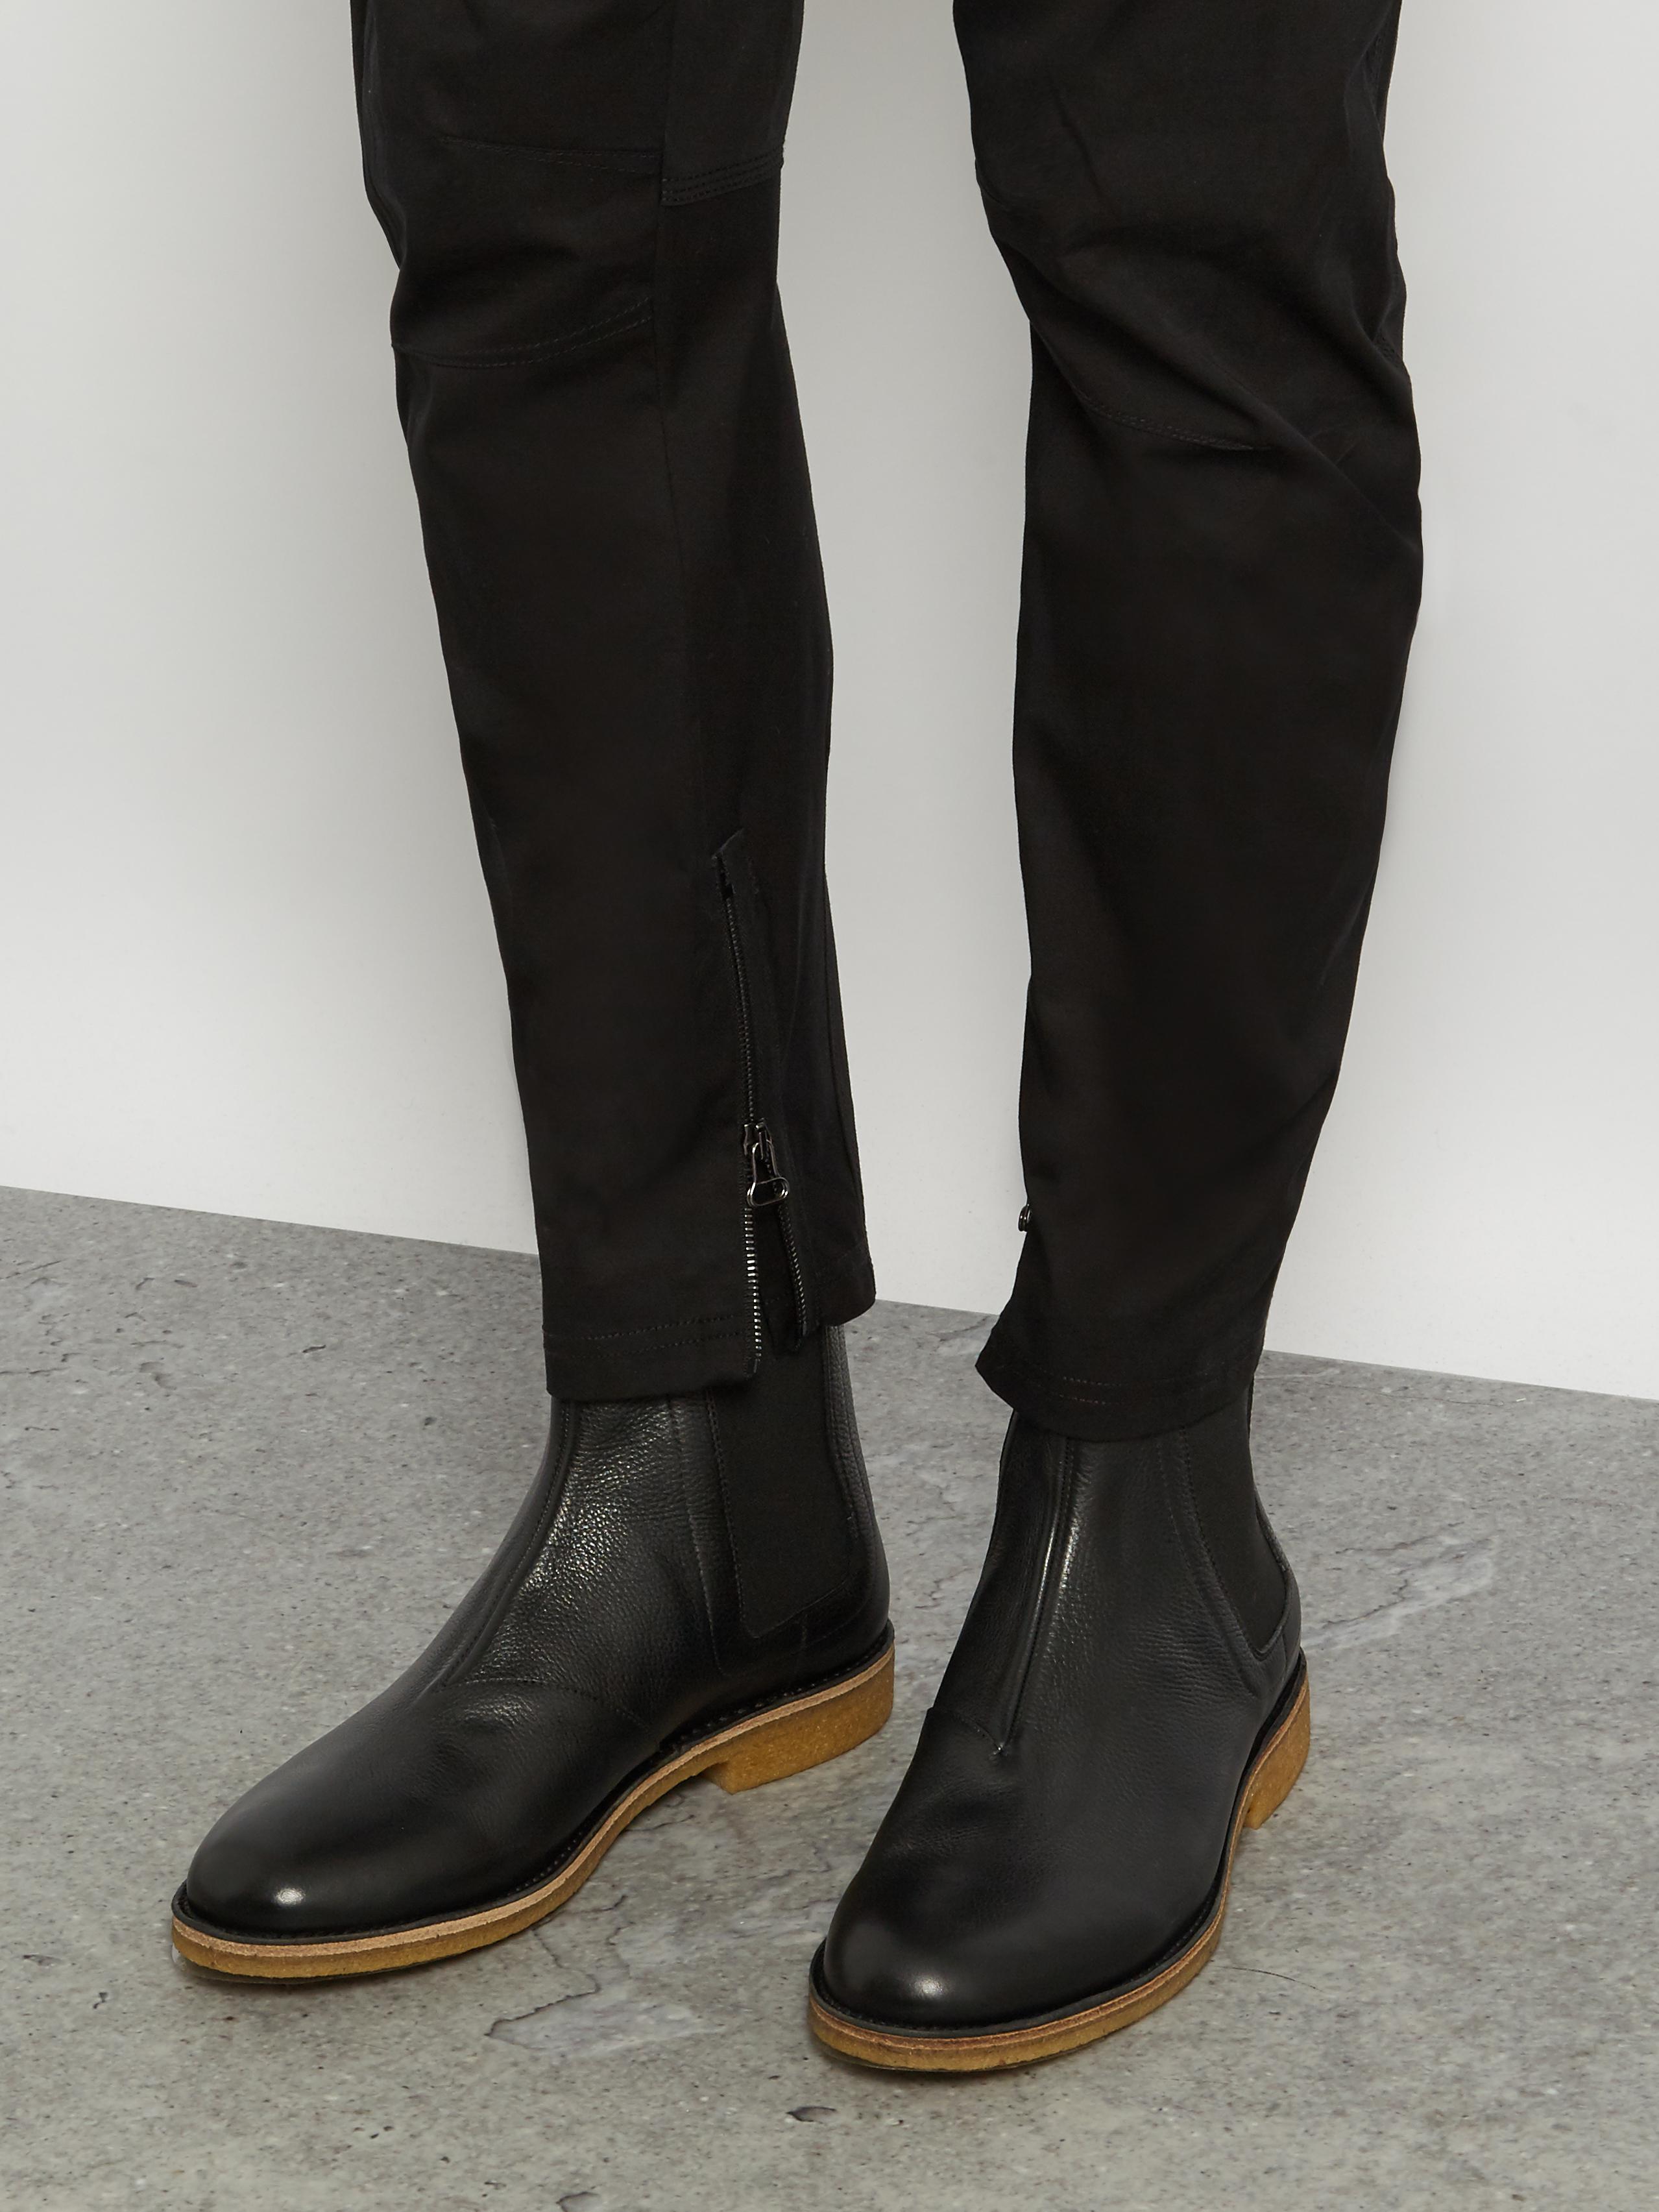 Lyst - Bottega Veneta Leather Chelsea Boots in Black for Men